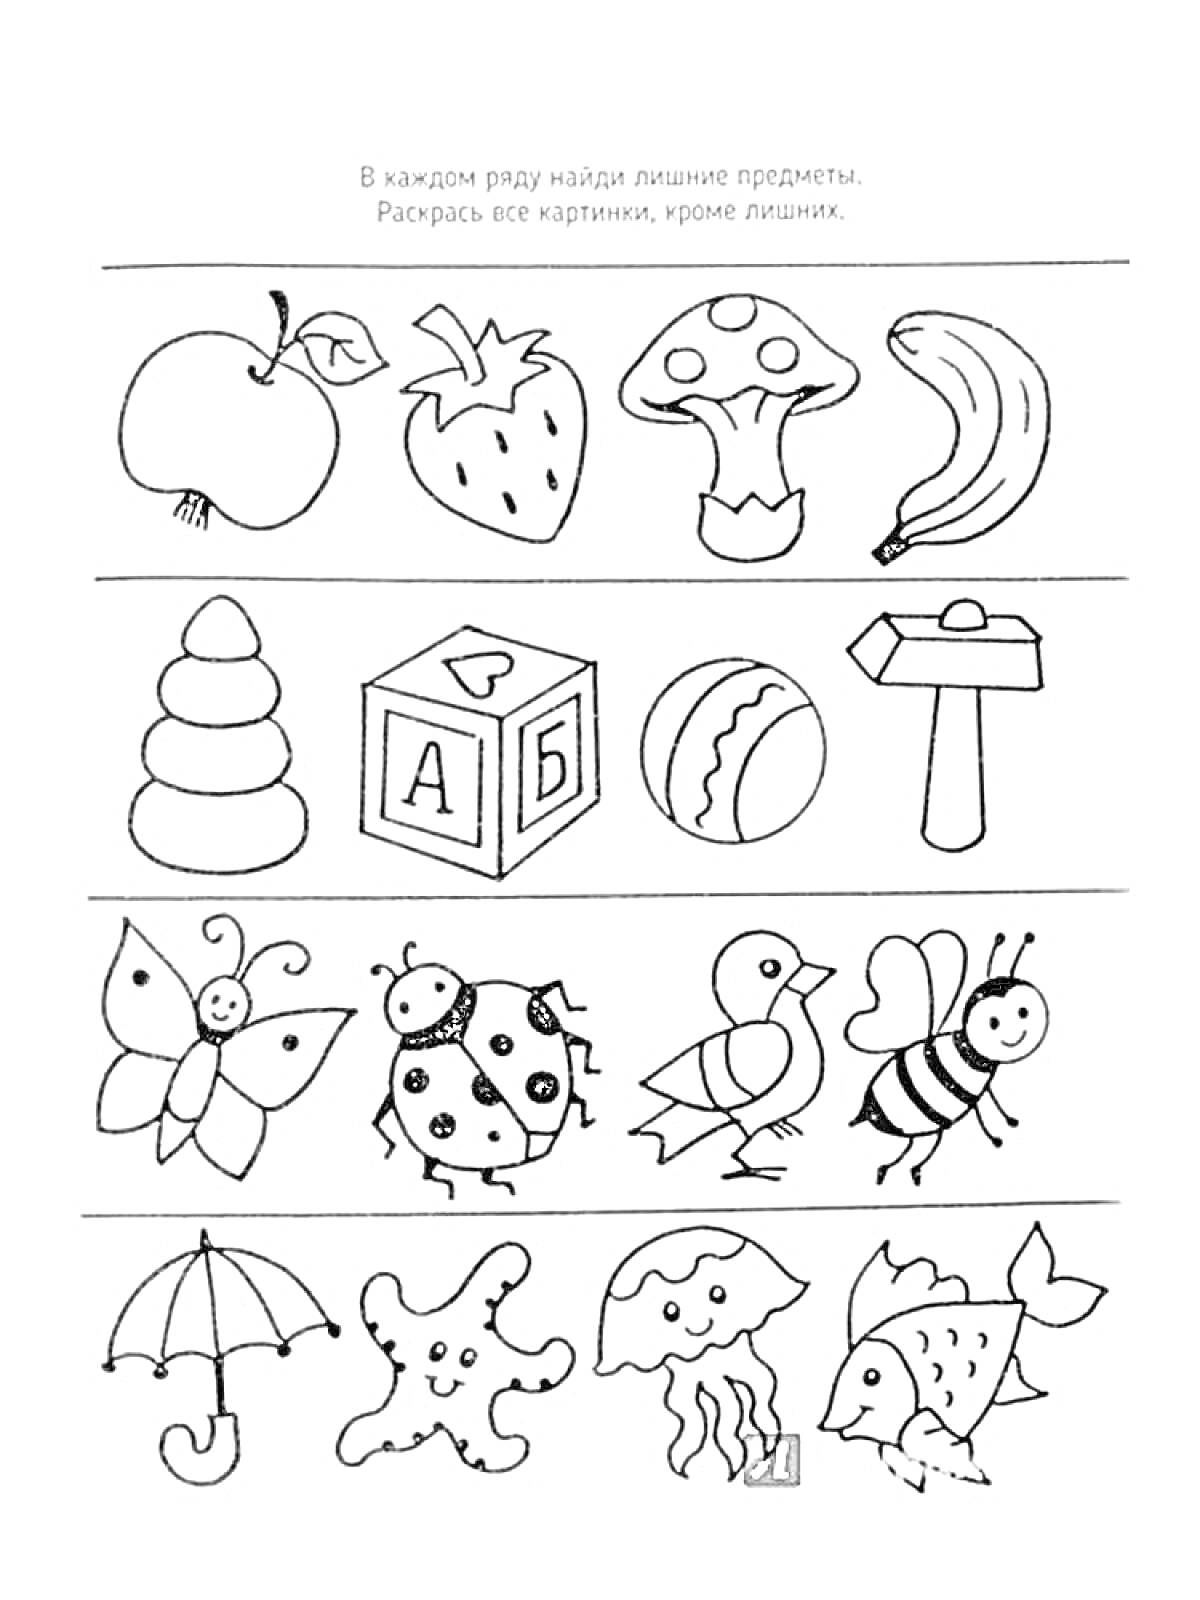 Раскраска Лишние предметы: яблоко, клубника, гриб, банан, пирамидка, кубик, мяч, молоток, бабочка, божья коровка, ослик, пчела, зонт, пятно, облако, рыба